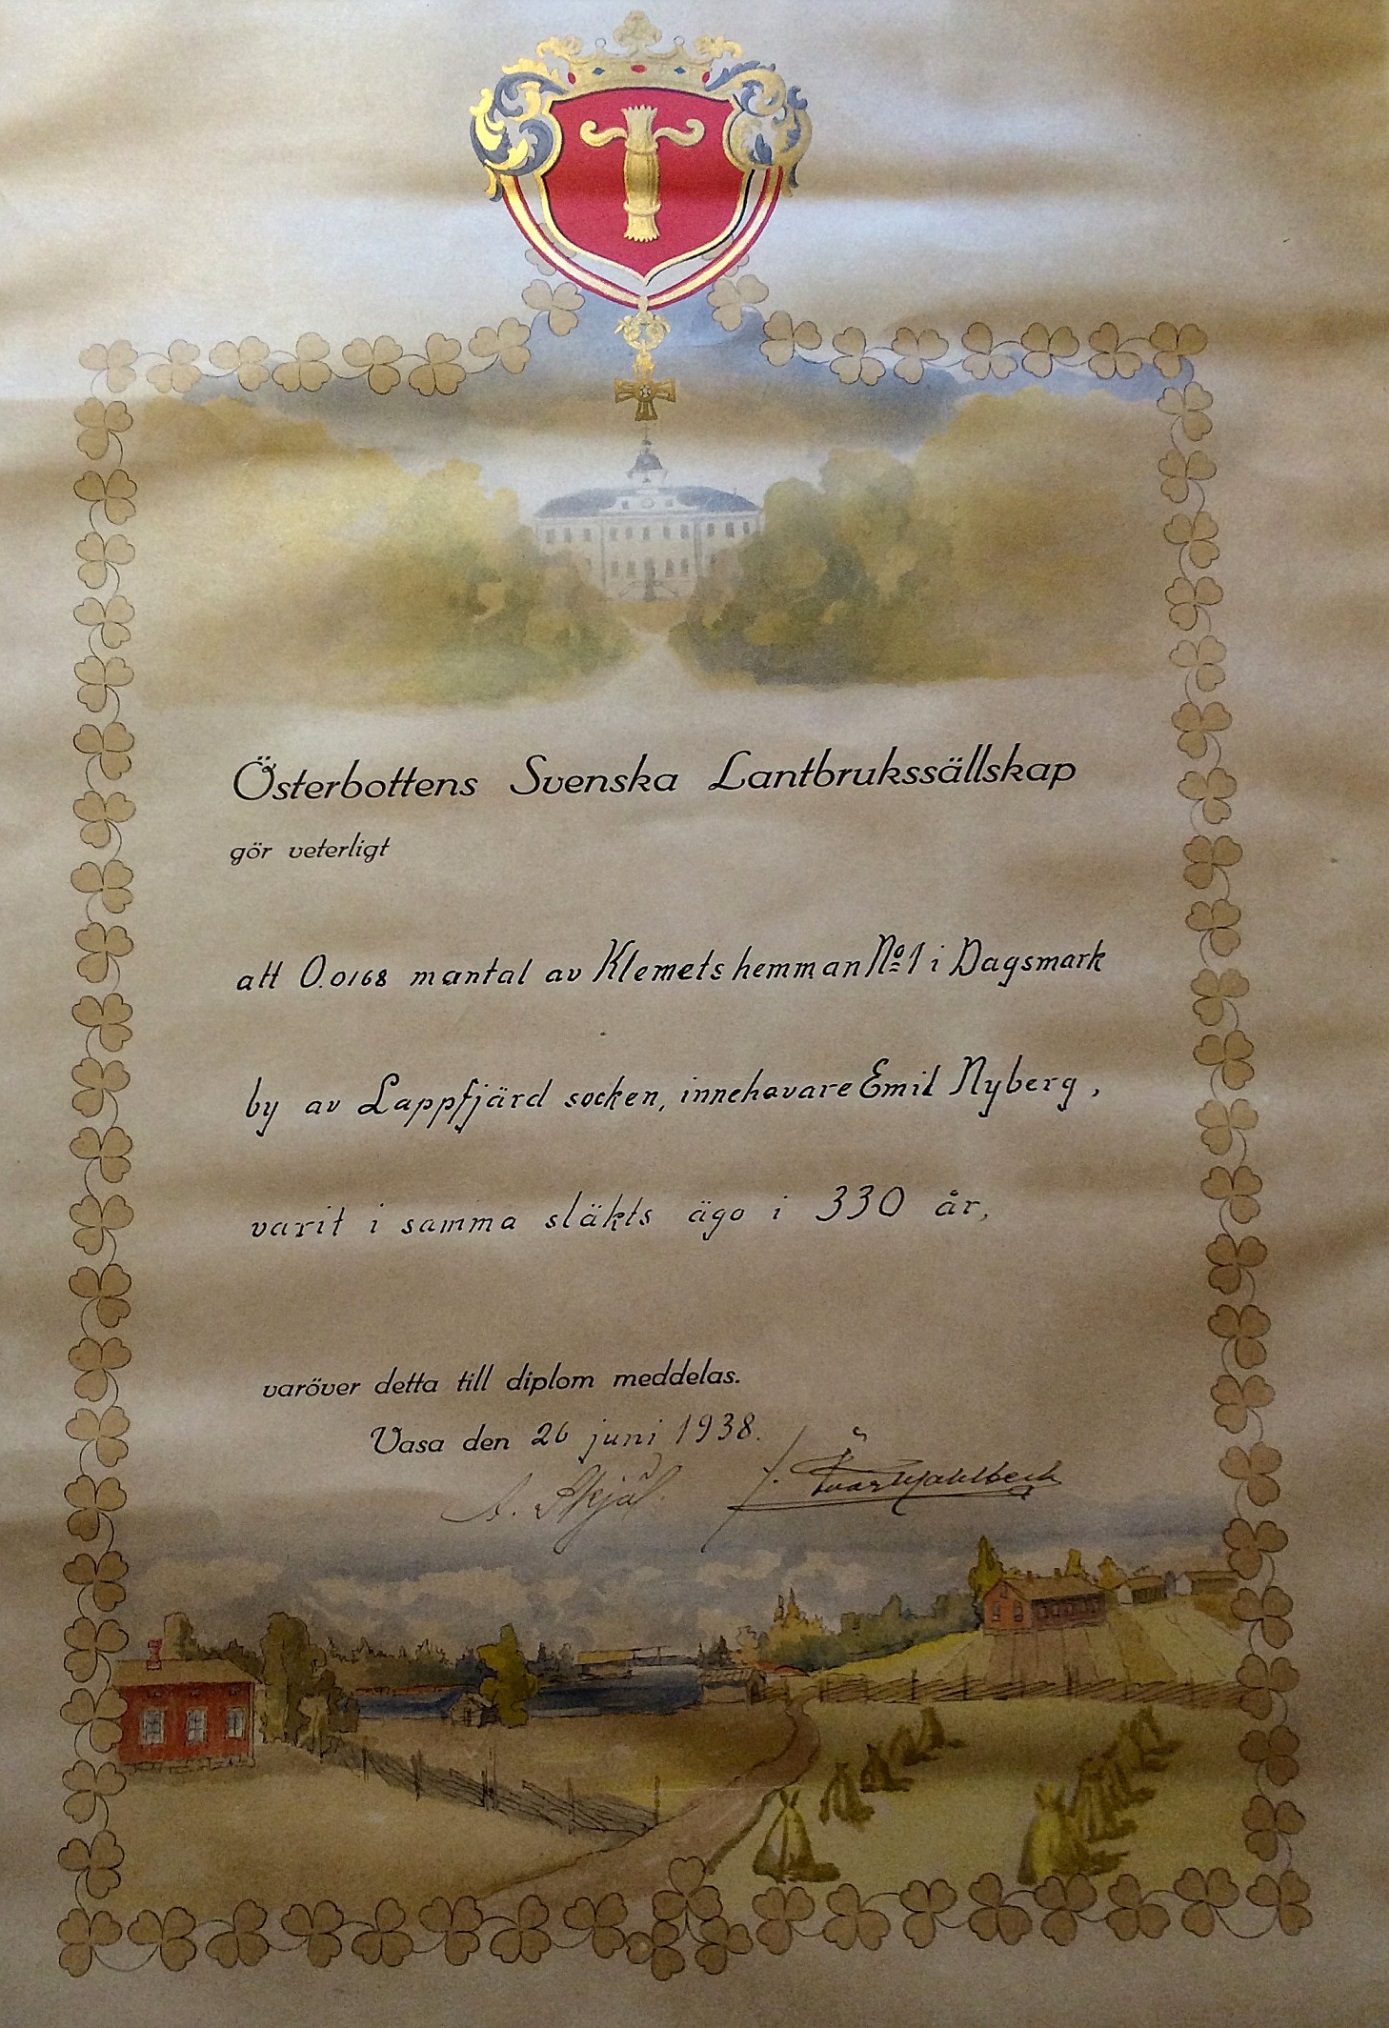 År 1938 fick Emil Nyberg detta diplom av Österbottens Svenska Lantbrukssällskap, som visar att hans hemman är en del av Klemets gamla hemman som funnits till sedan 1608. 